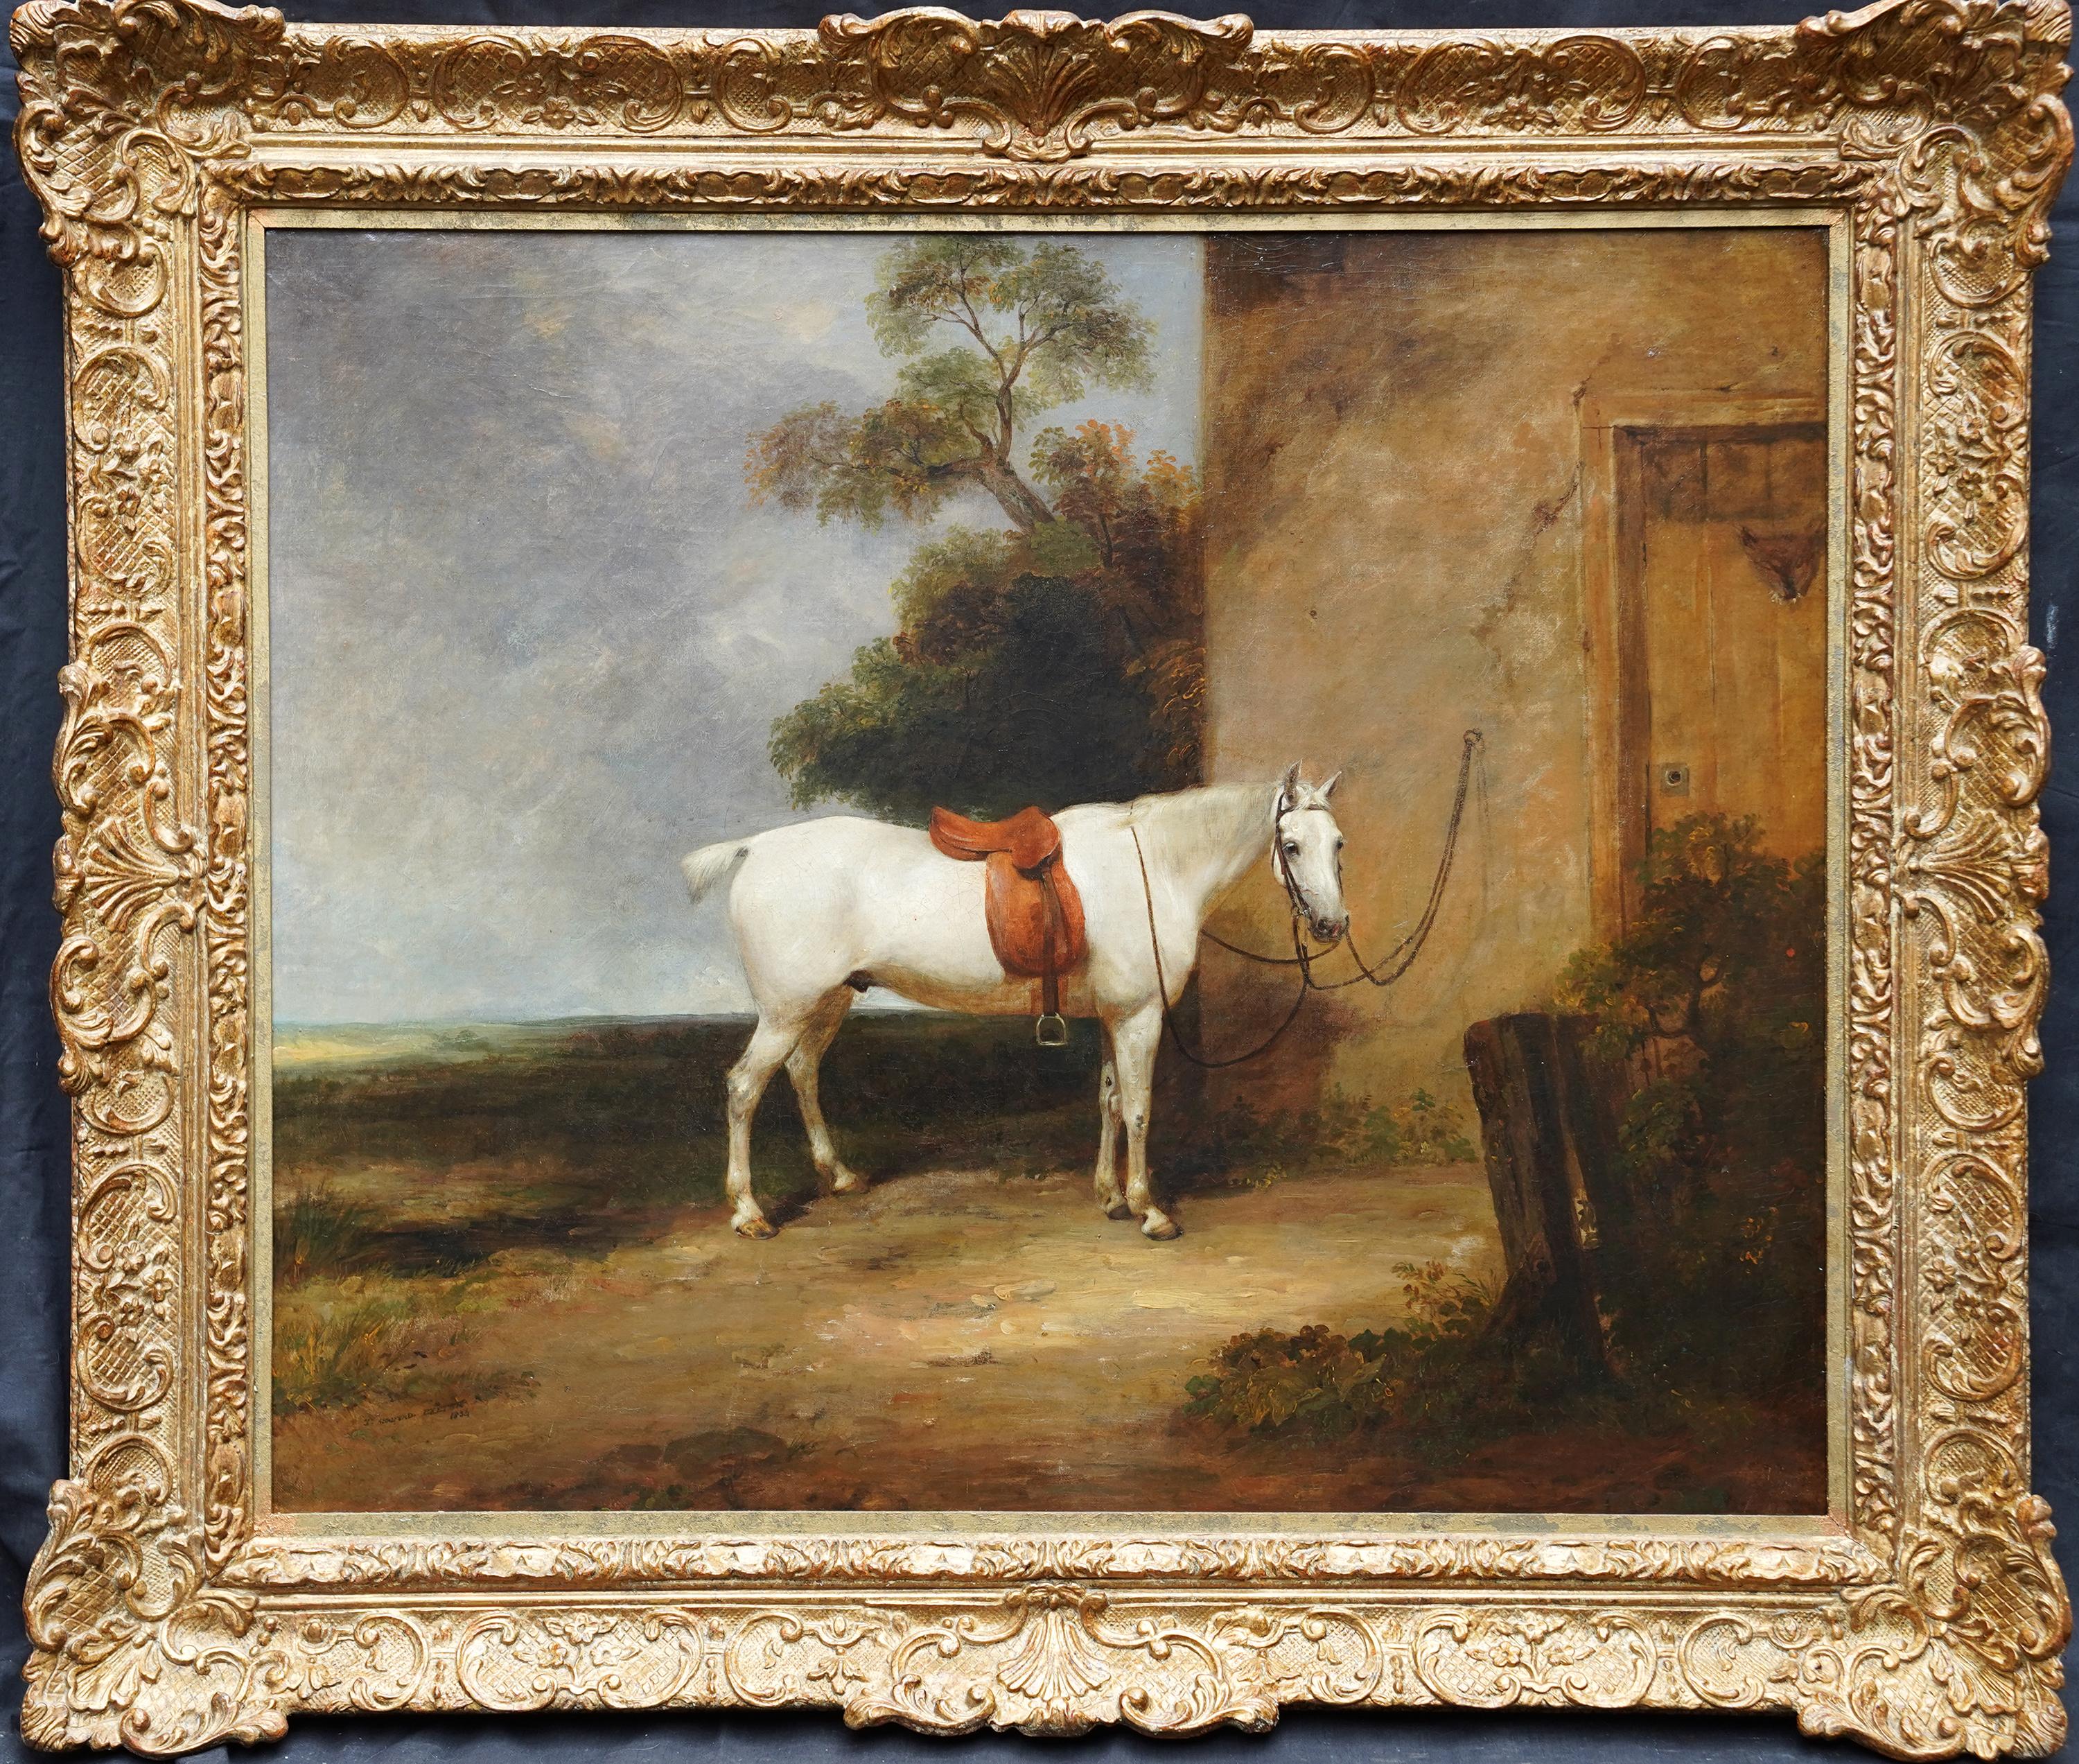 Porträt eines Jägerpferdes in einer Landschaft – Ölgemälde eines alten Meisters